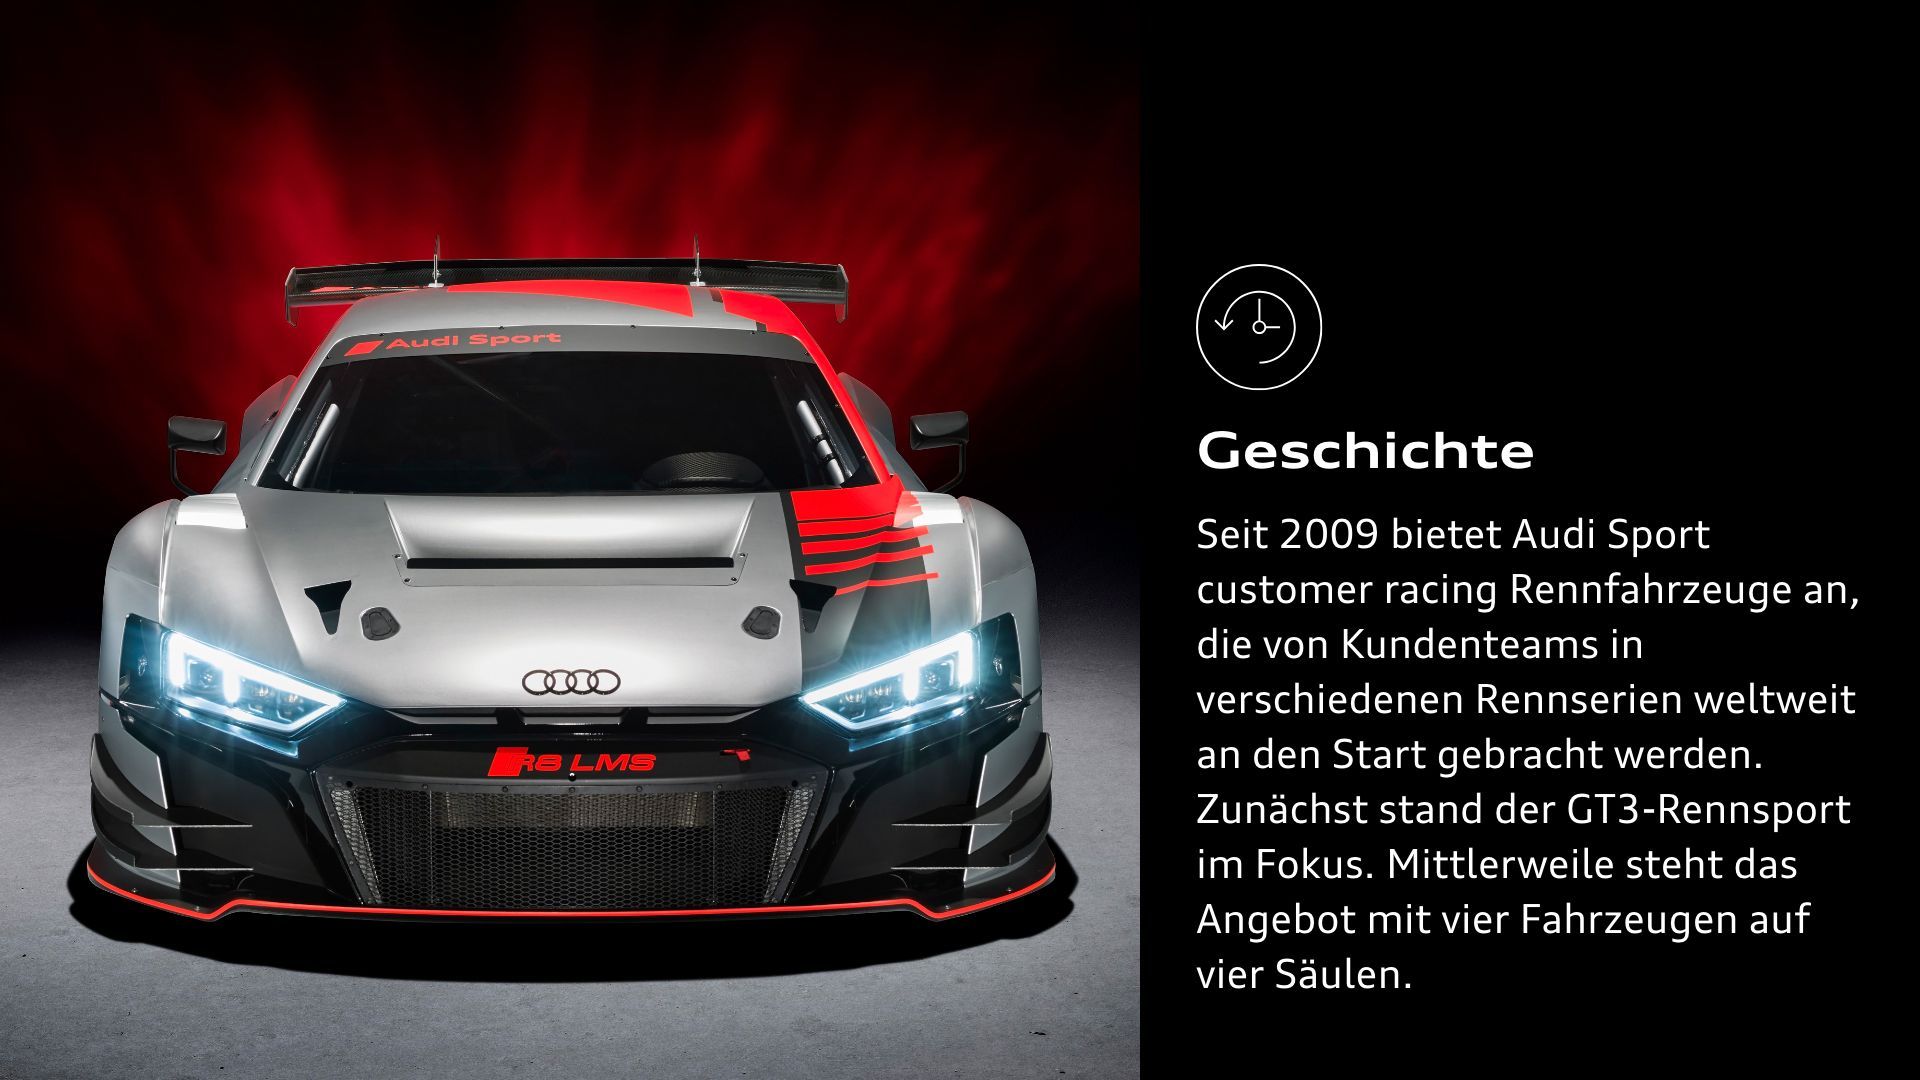  Geschichte: Seit 2009 bietet Audi Sport customer racing Rennfahrzeuge an, die von Kundenteams in verschiedenen Rennserien weltweit an den Start gebracht werden. Zunächst stand der GT3-Rennsport im Fokus. Mittlerweile steht das Angebot mit vier Fahrzeugen auf vier Säulen.